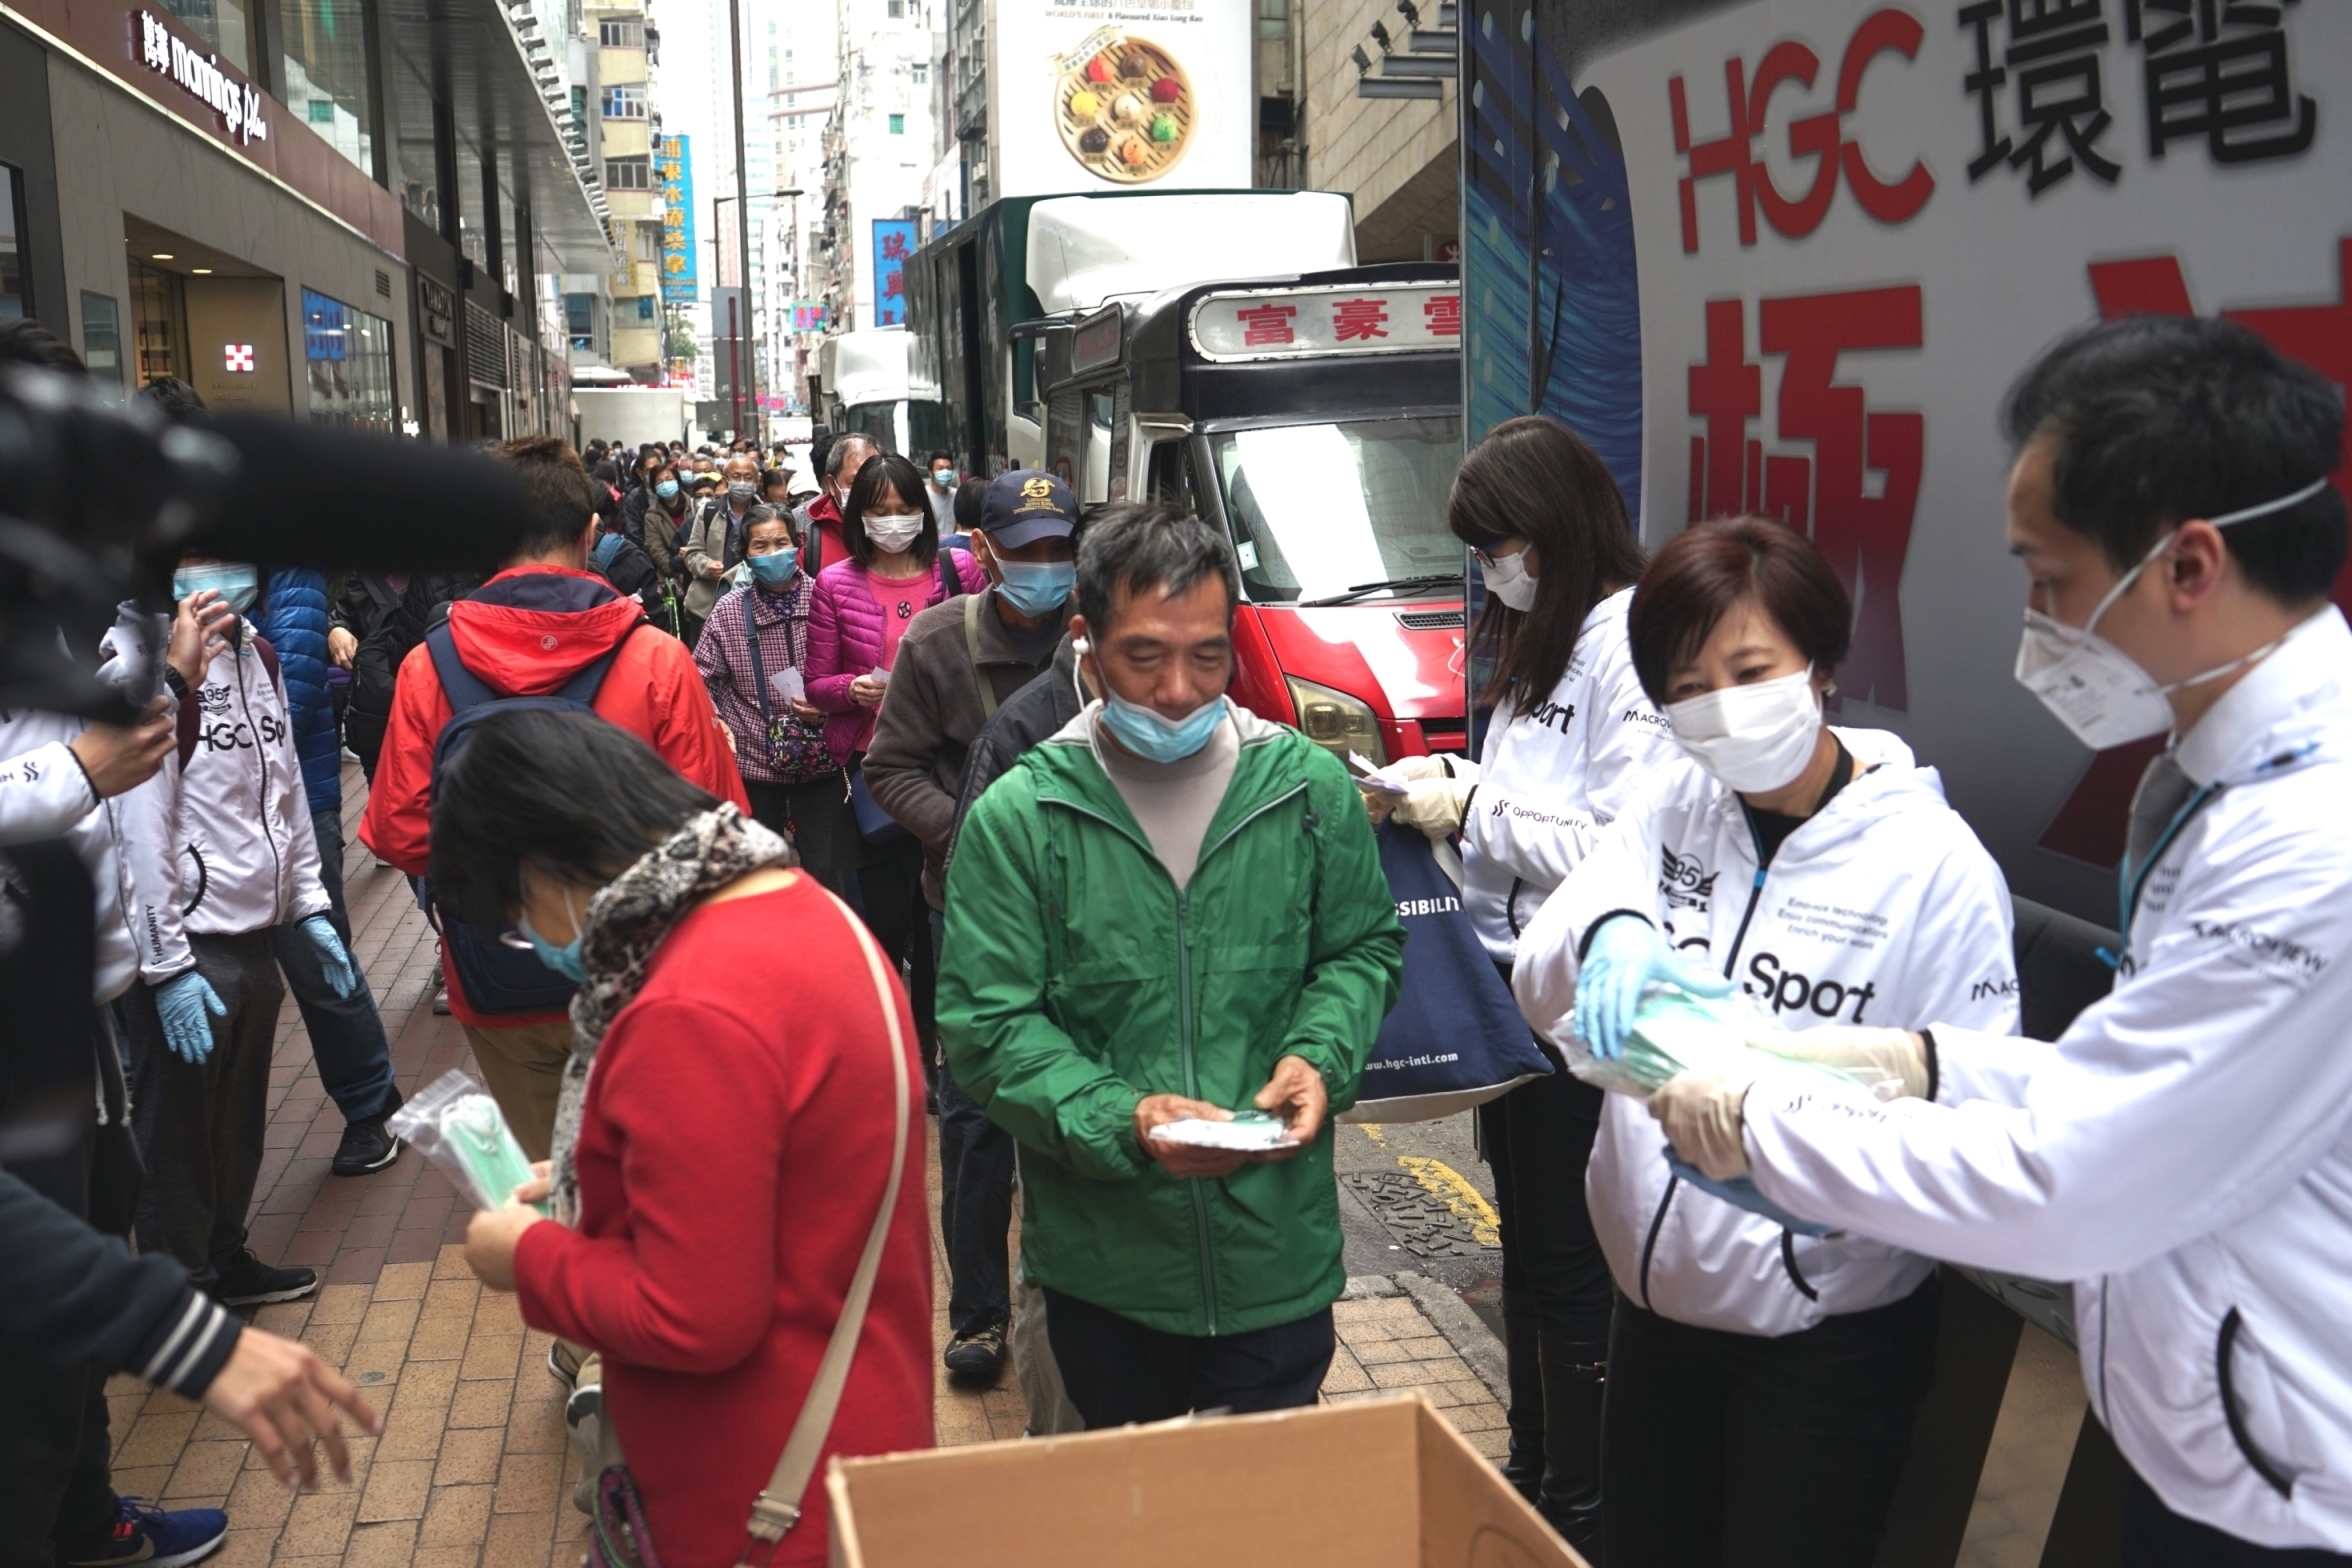 Hgc Distributes 50000 Medical Masks To Hong Kong Citizens 2